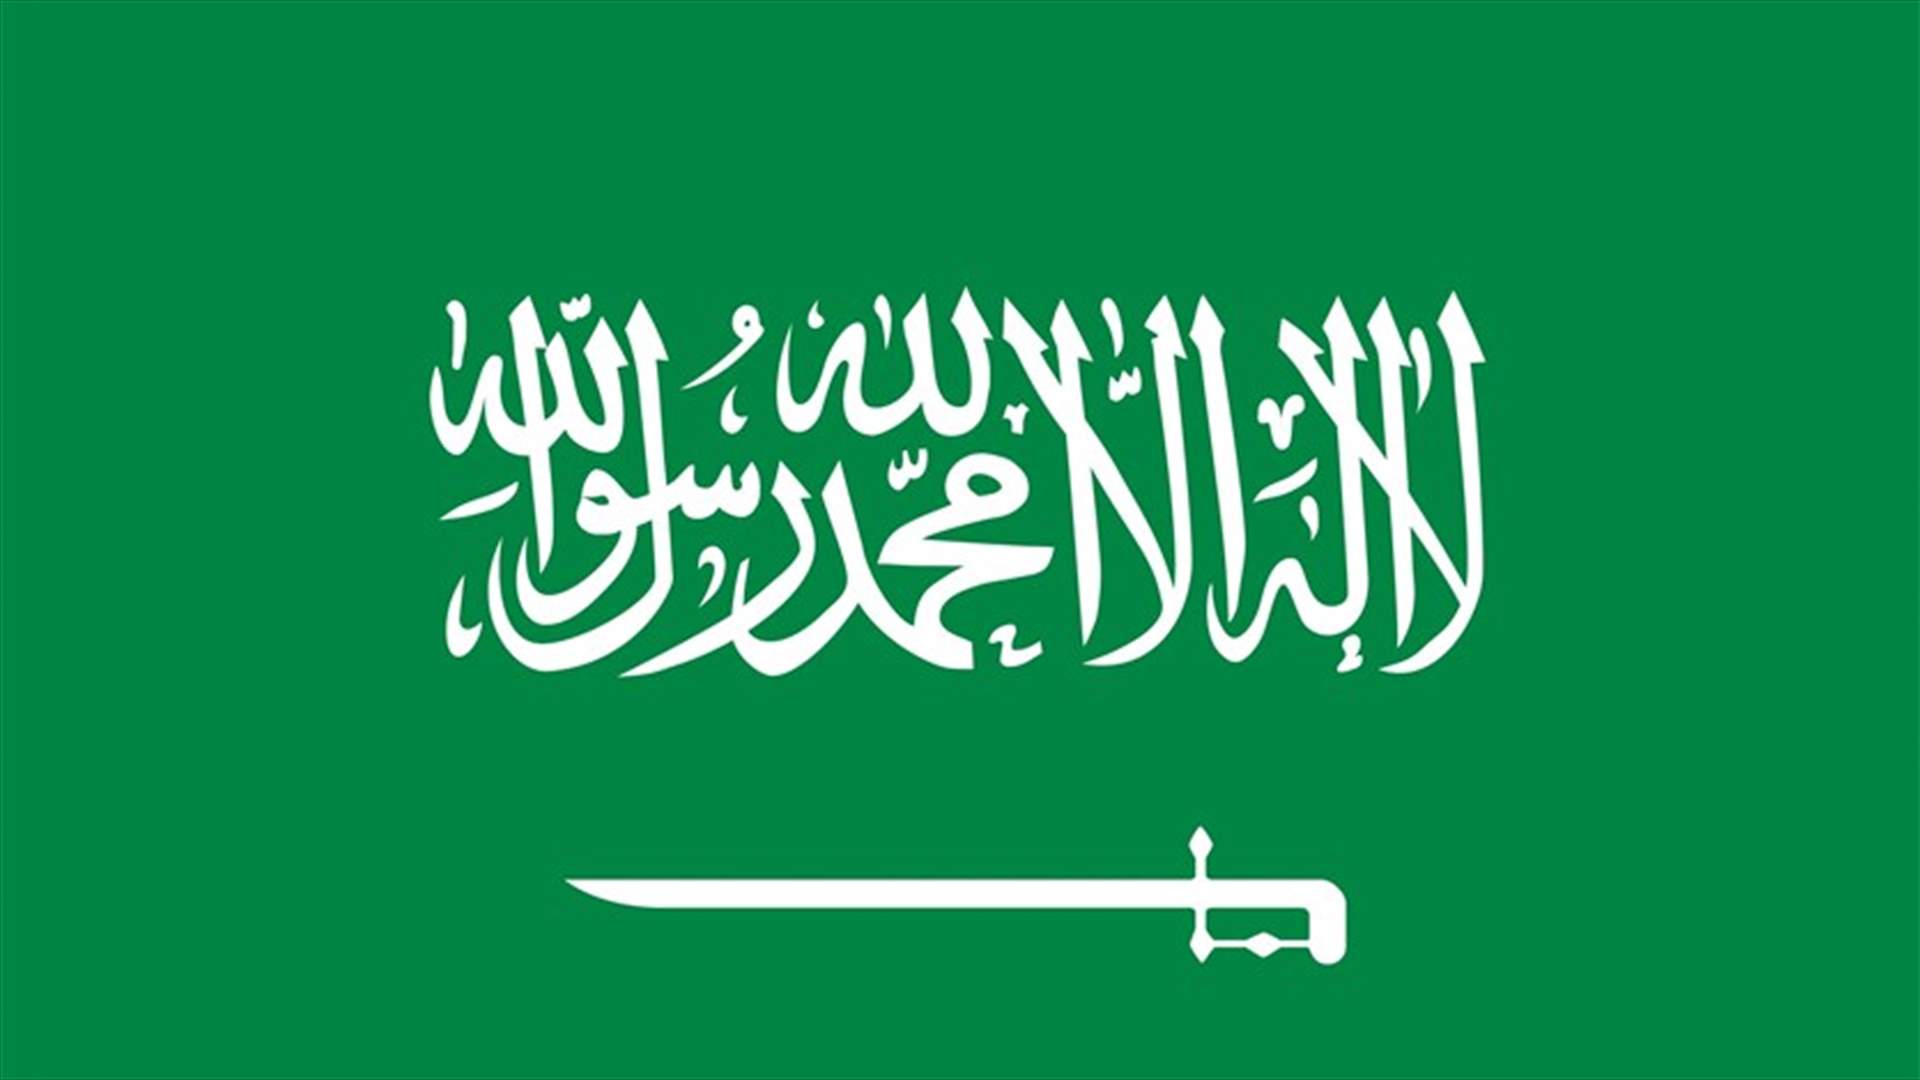 السعودية تشترط تلقي جرعة لقاح كورونا الثانية للسفر إلى الخارج